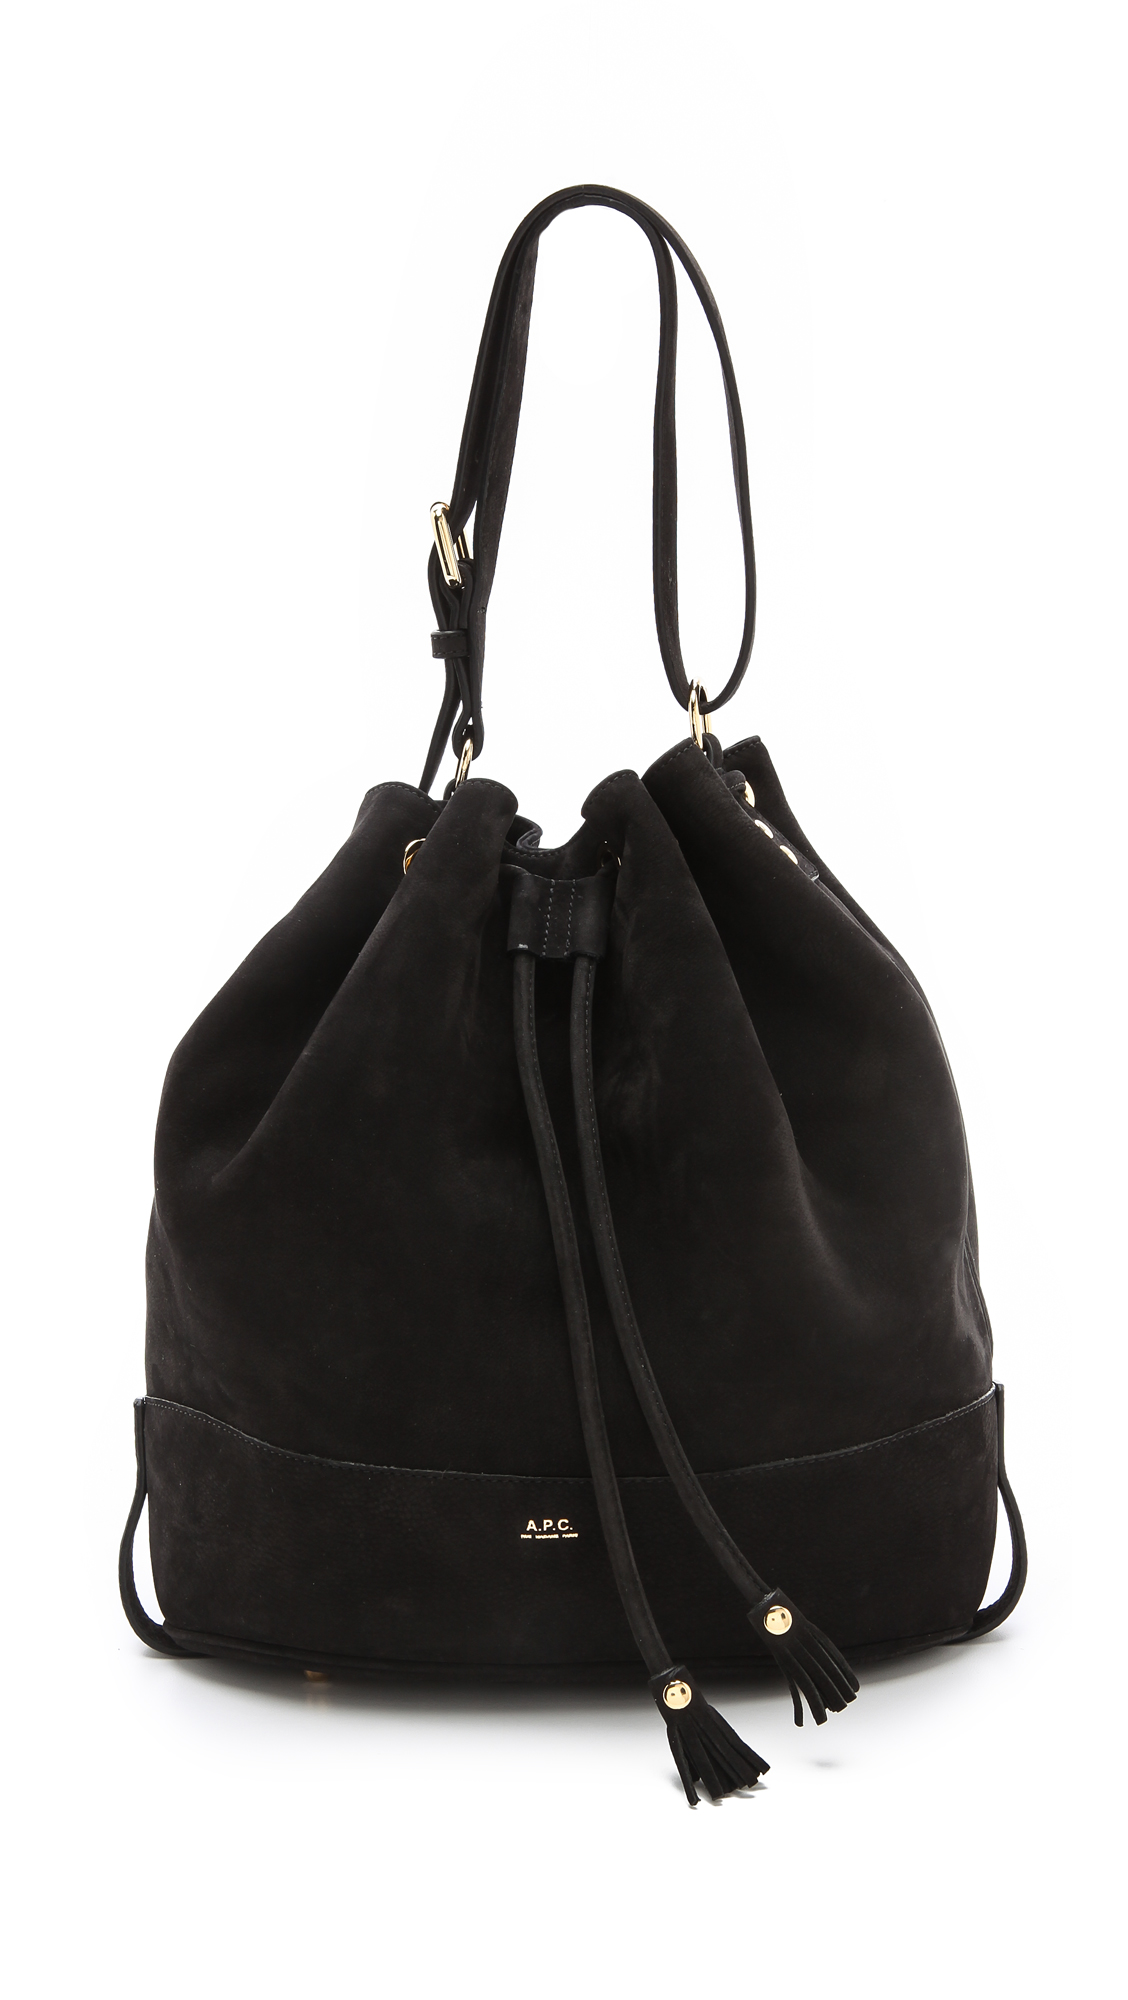 A.P.C. Seau Gf Bucket Bag in Black - Lyst